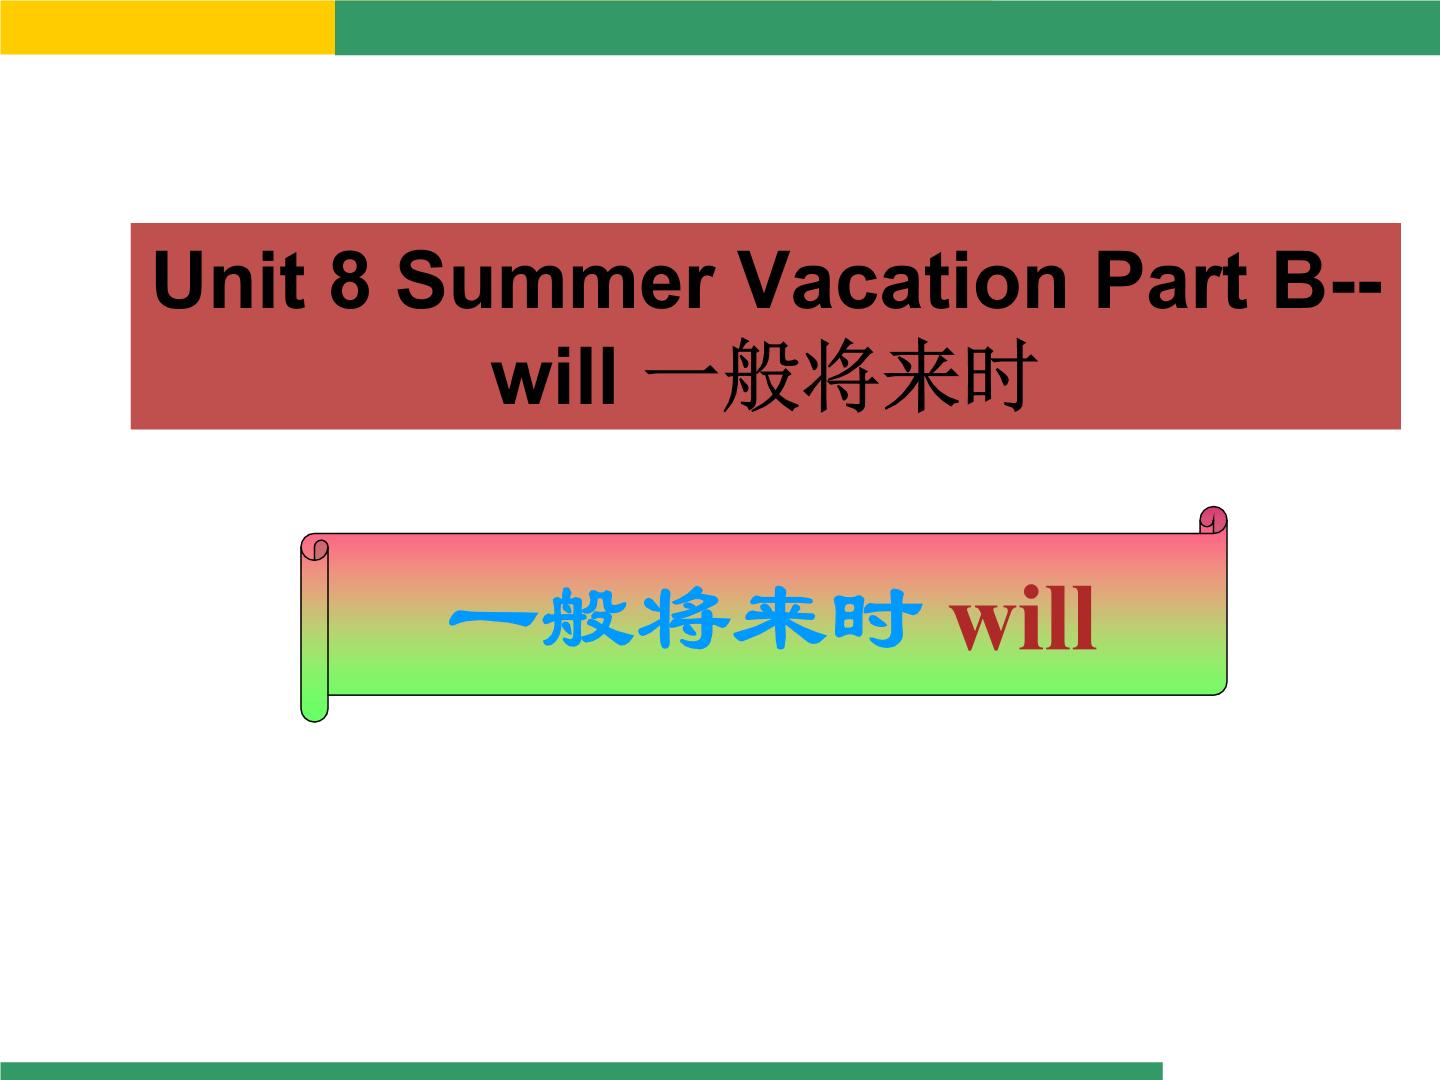 小学英语闽教版四年级下册Unit 8 Summer Vacation Part B教案配套ppt课件